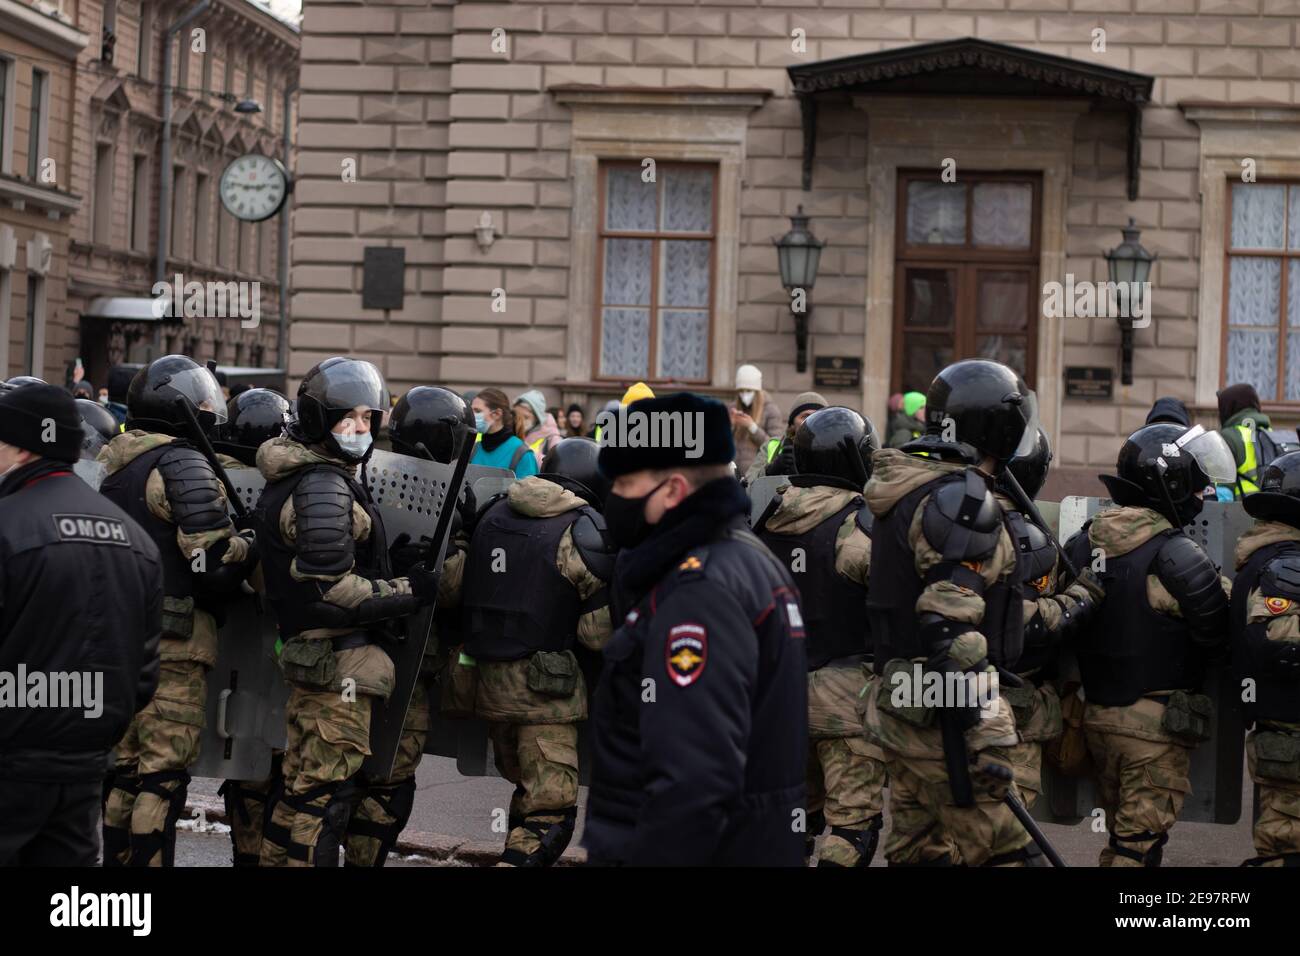 Saint-Pétersbourg, Russie - 31 janvier 2021 : escouade de la force militaire dans la rue, groupe de police en pleine armure avec arme, éditorial. Banque D'Images